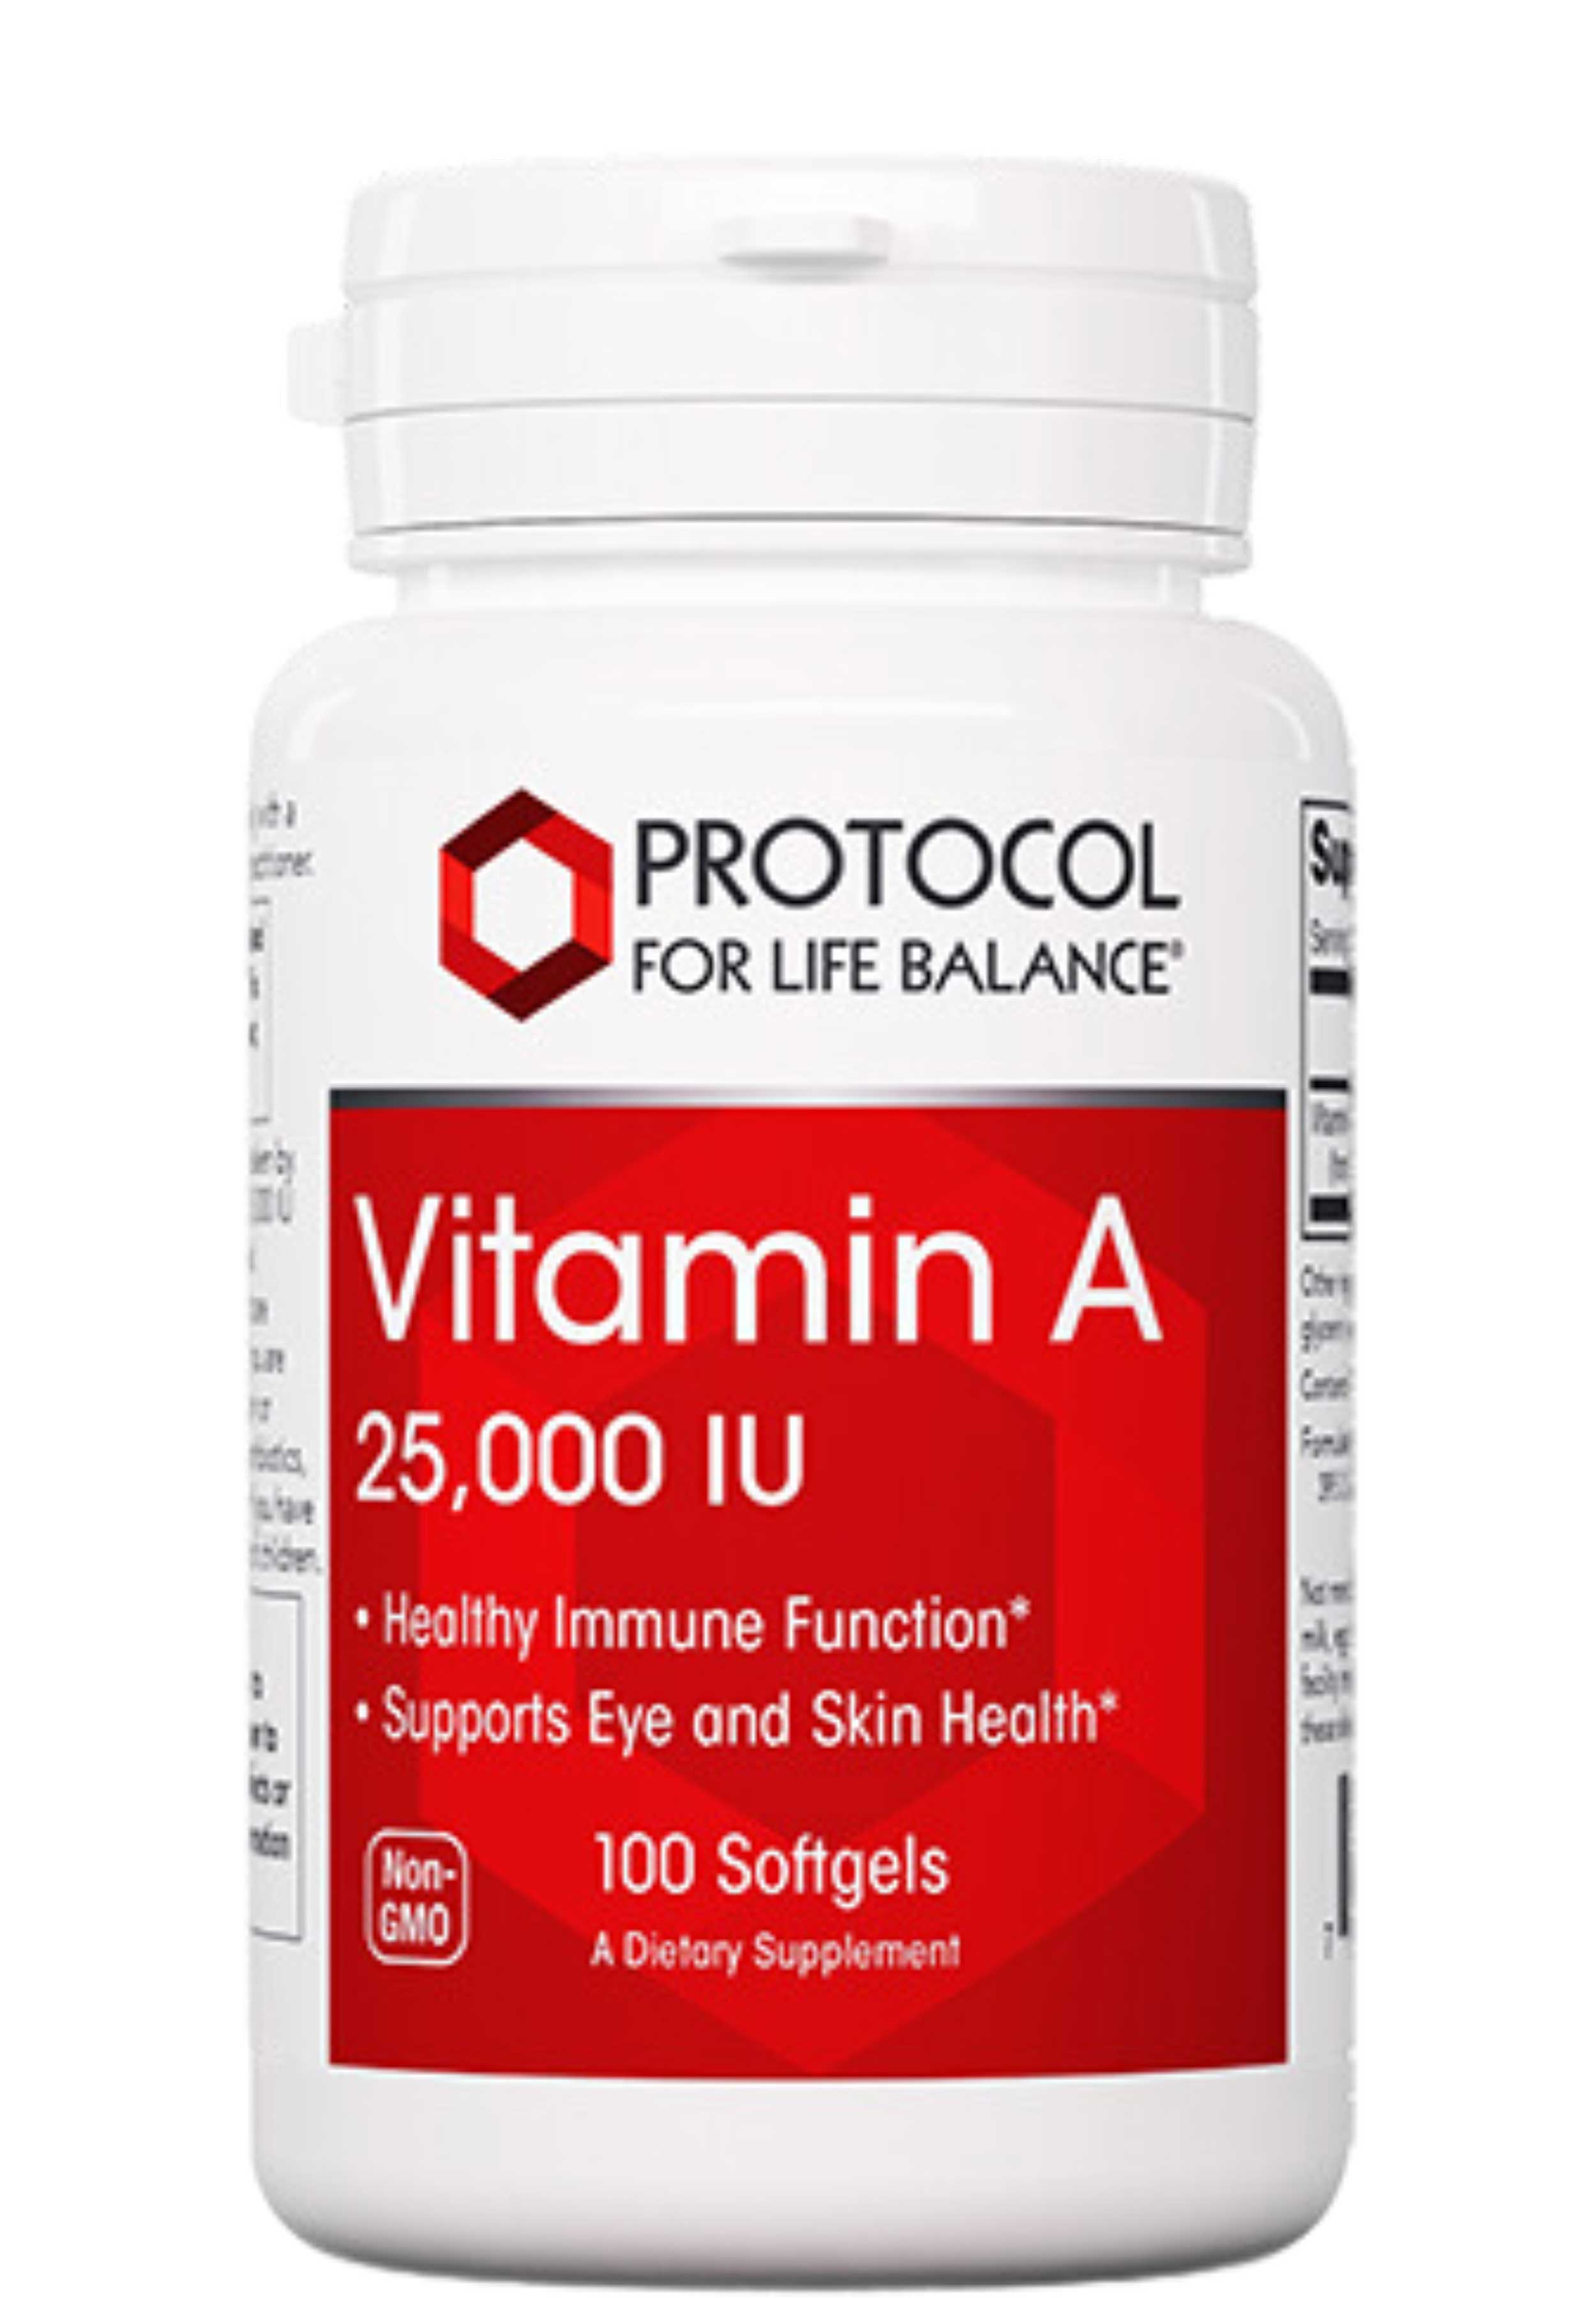 Protocol for Life Balance Vitamin A 25,000 IU